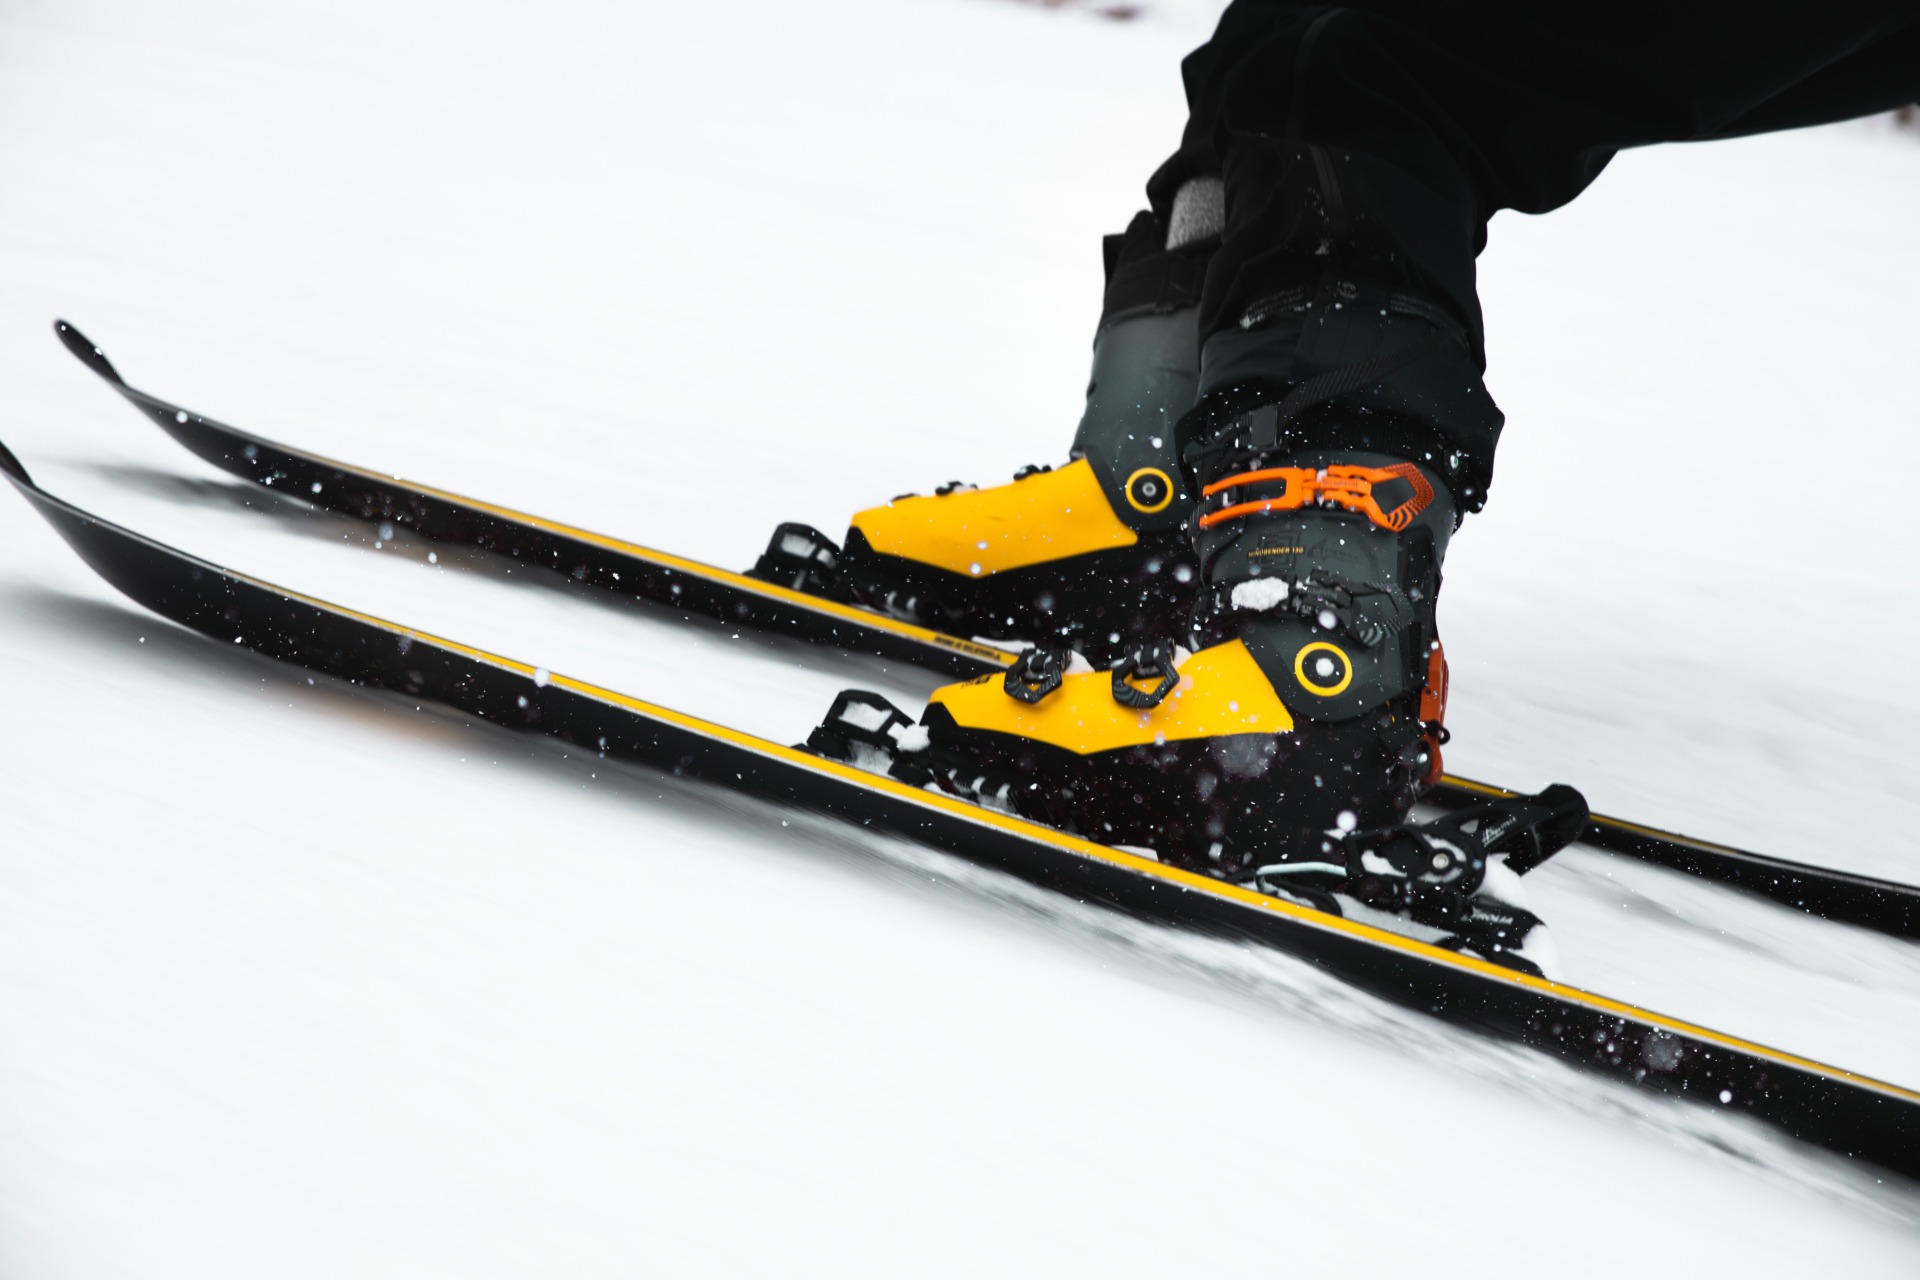 Preek Uitvoerder winnaar Nieuwe hak voor je skischoen nodig? Hier moet je op letten